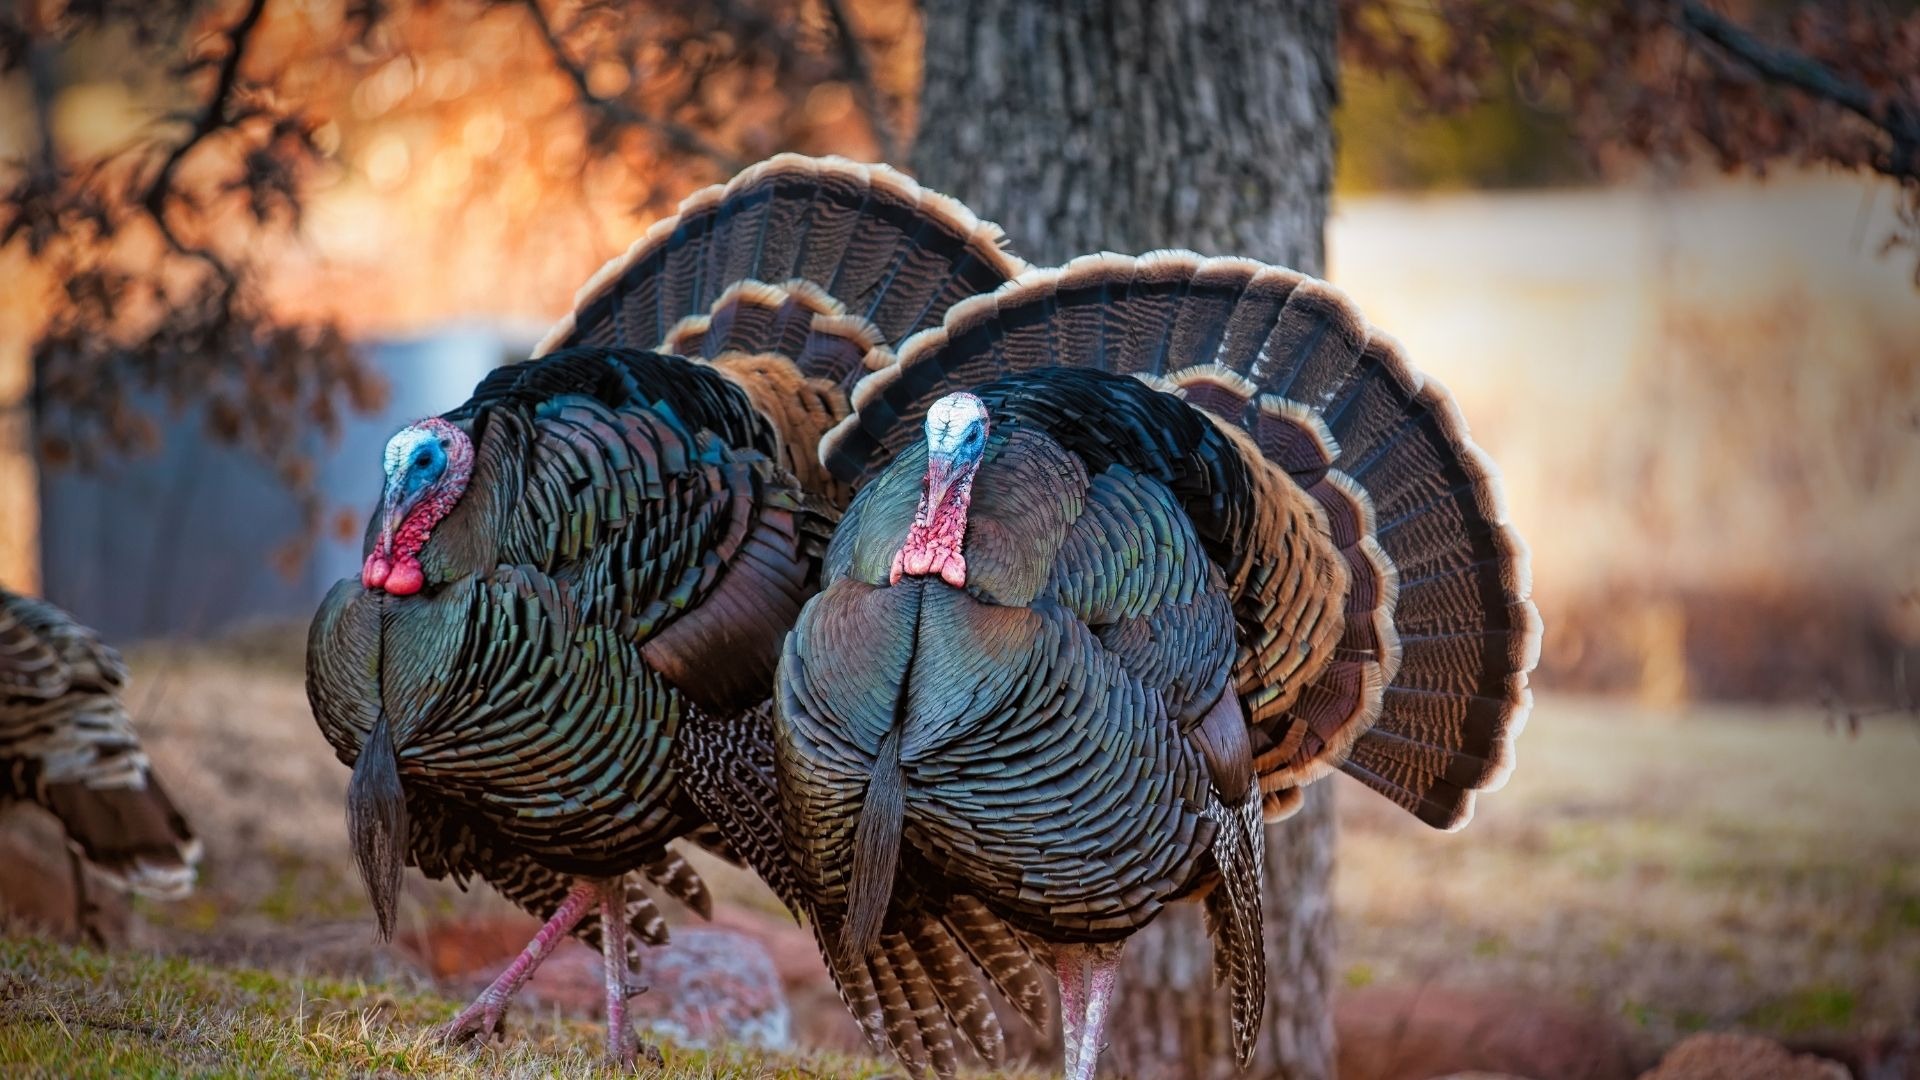 fauna-feature-wild-turkeys-blog-pottawattamie-conservation